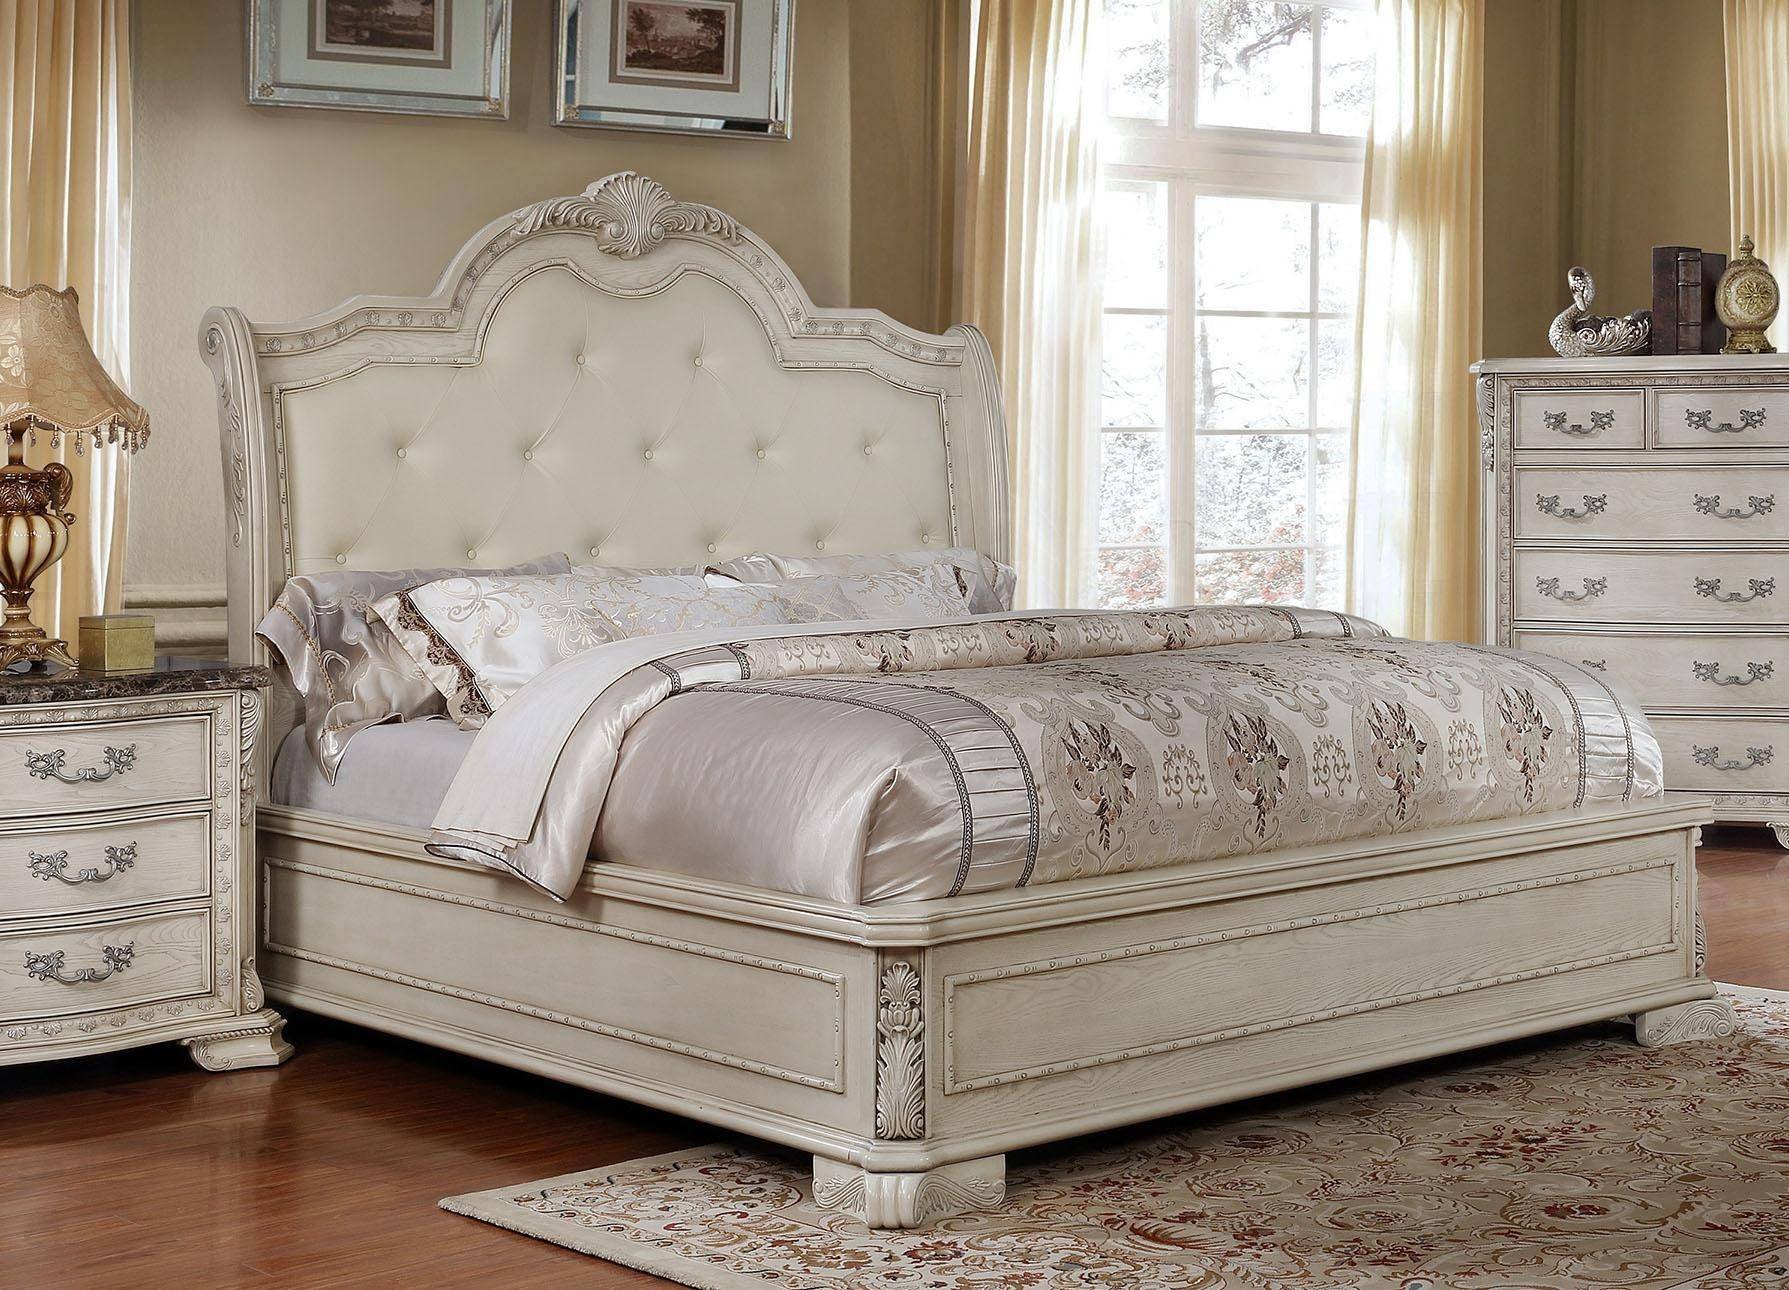 King Size Bedroom Set Luxury Mcferran B1000 Antique White Tufted King Size Bedroom Set